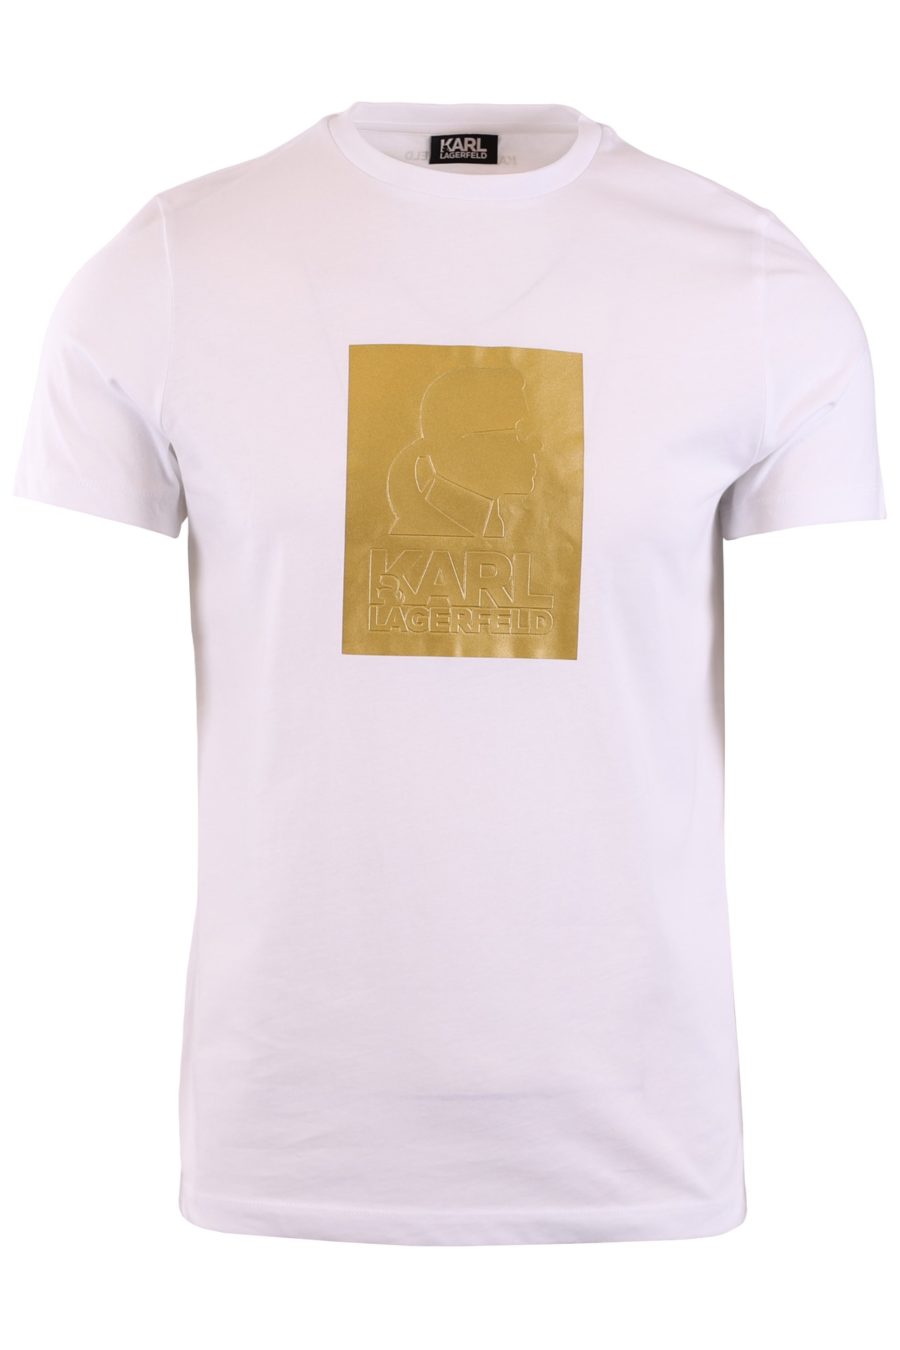 White T-shirt gold print "Karl" - b4c0b4e78ead2e519532907d000289816327dc34